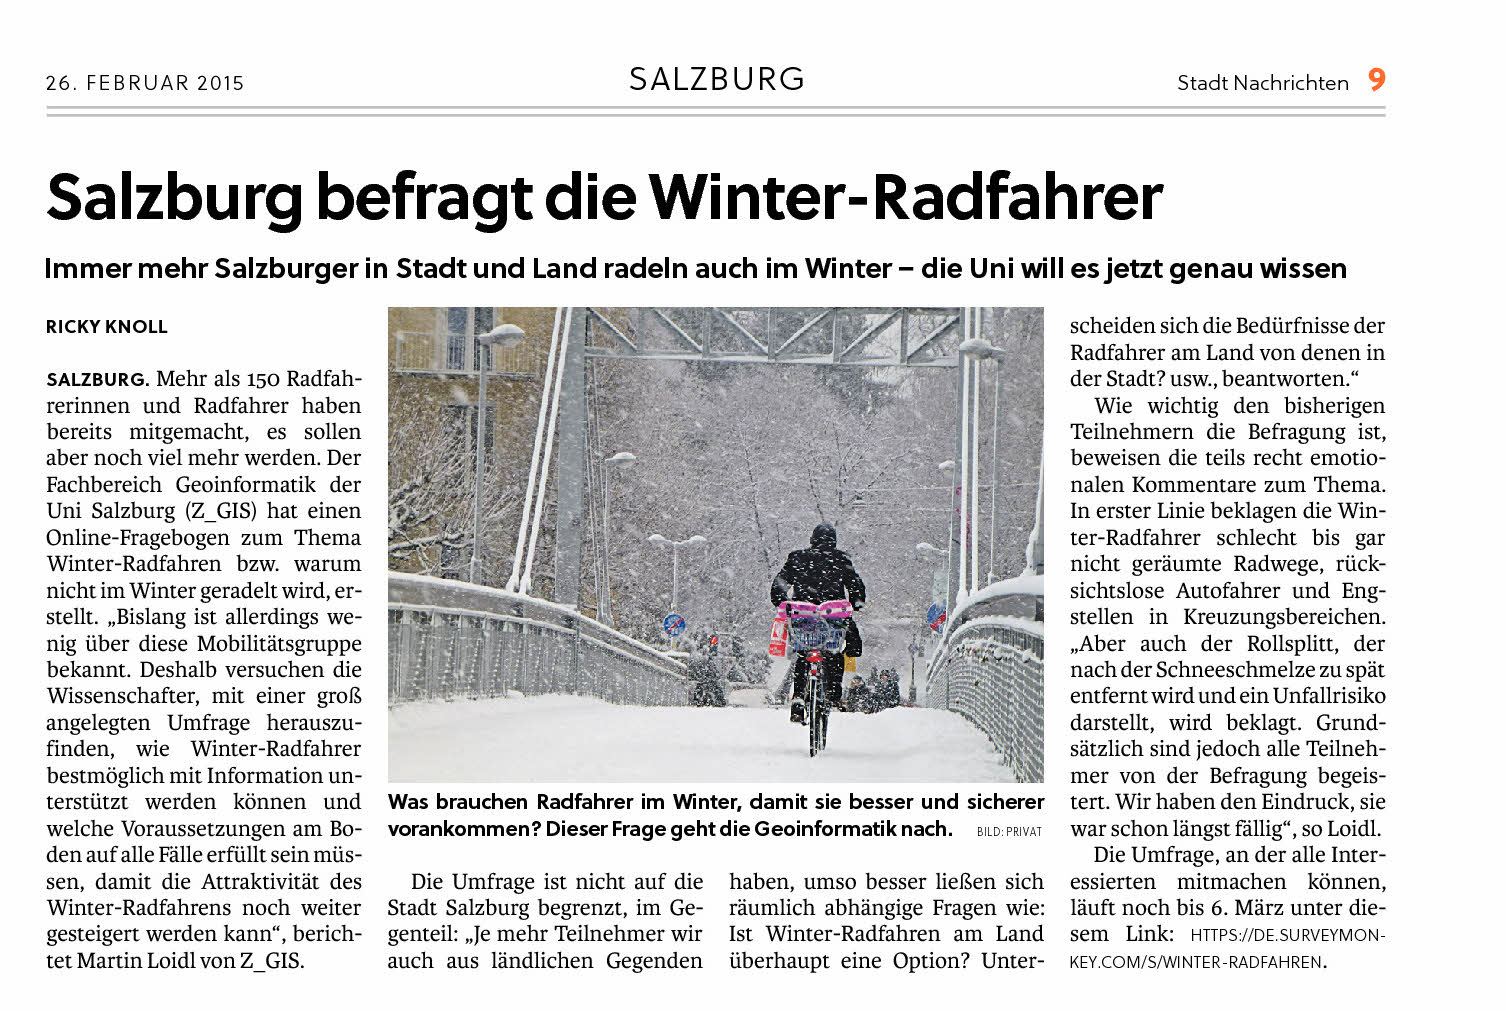 2015-02-26-meine-woche-bericht-winterradfahren